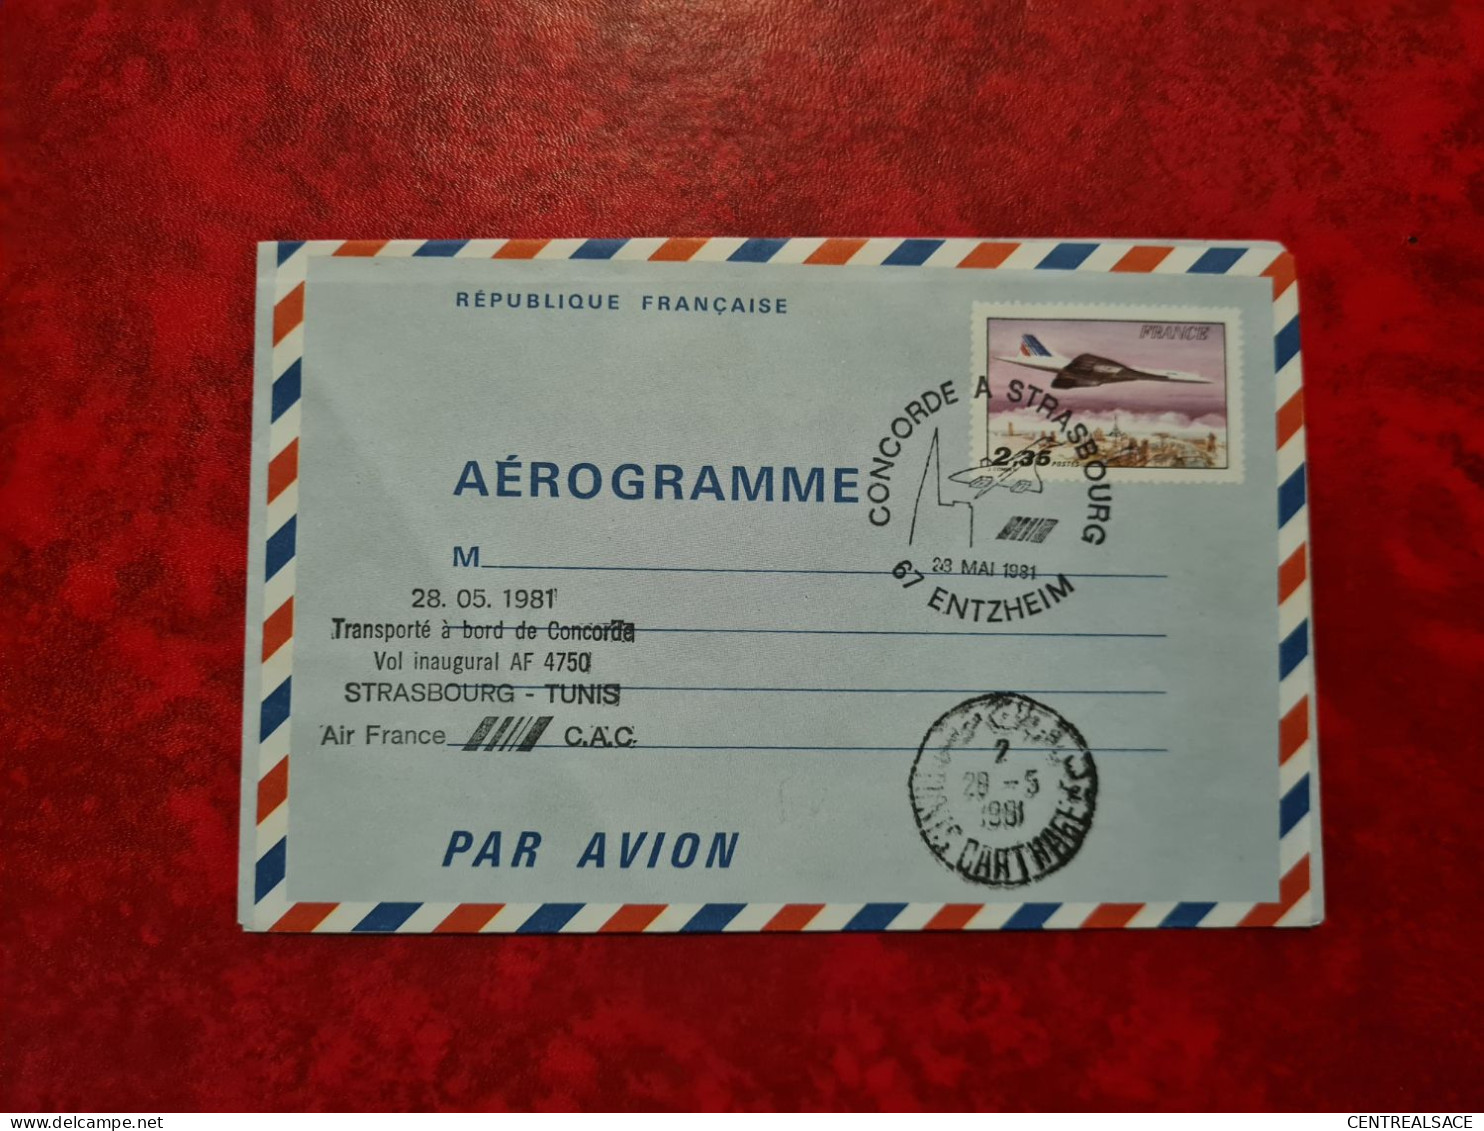 AEROGRAMME 1981 CONCORDE A STRASBOURG ENTZHEIM VOL INAUGURAL STRASBOURG TUNIS - Luchtpostbladen